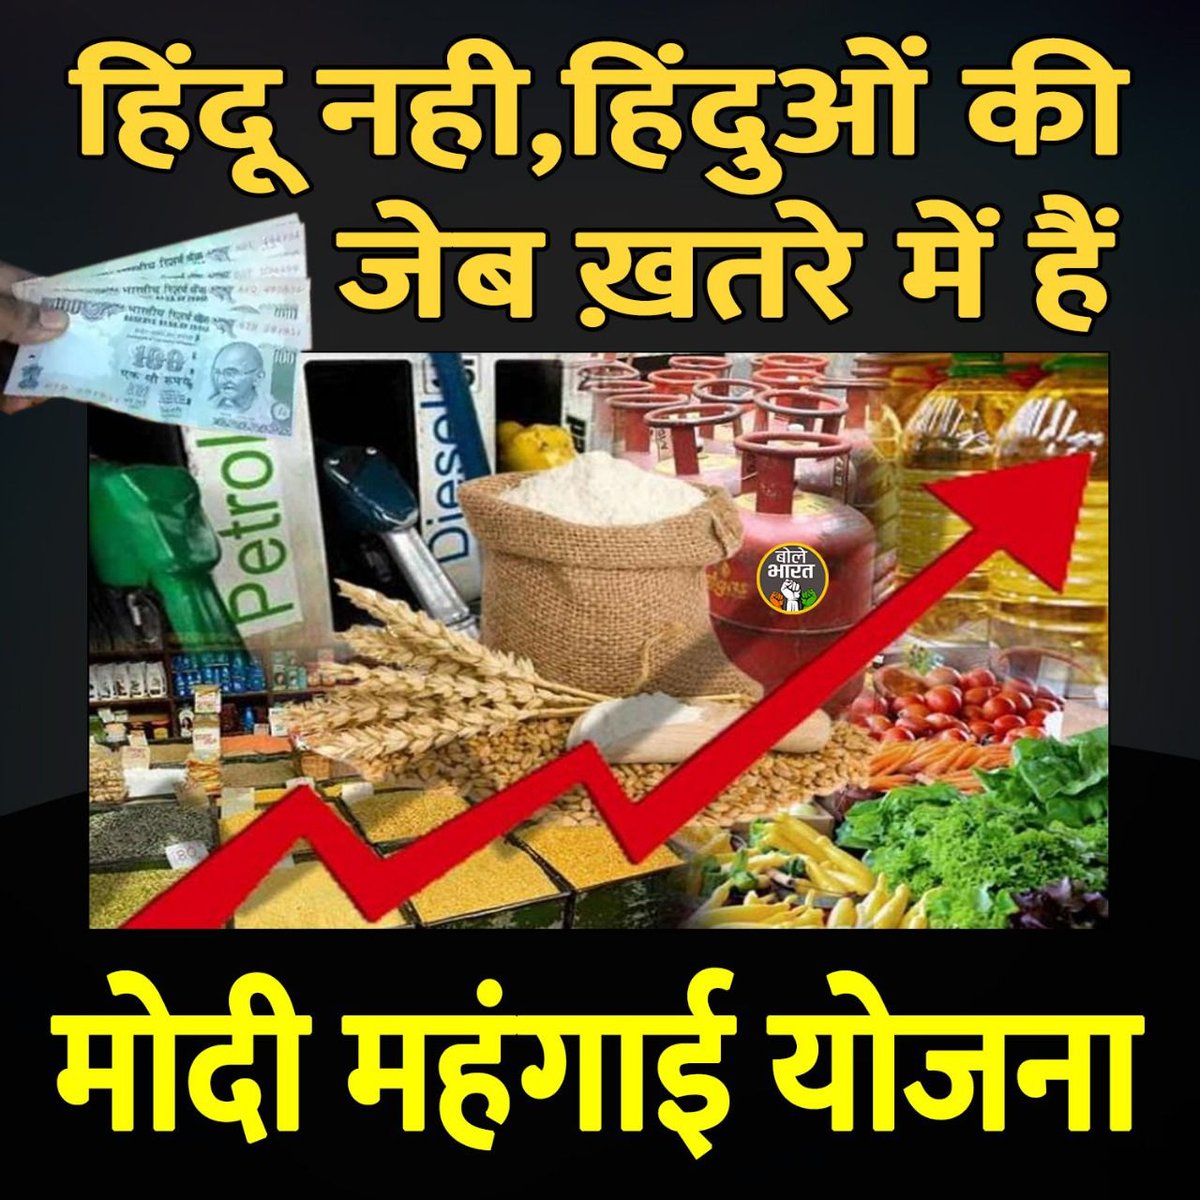 .@himantabiswa वाह, वाह, मुसलमान ही सब्जयों को महंगा कर रहे हैं?

🤭 हिंदुओं की जेब ख़तरे में हैं...

Modi Mehangai Yojna 
#TomatoPriceHike
#PriceHike